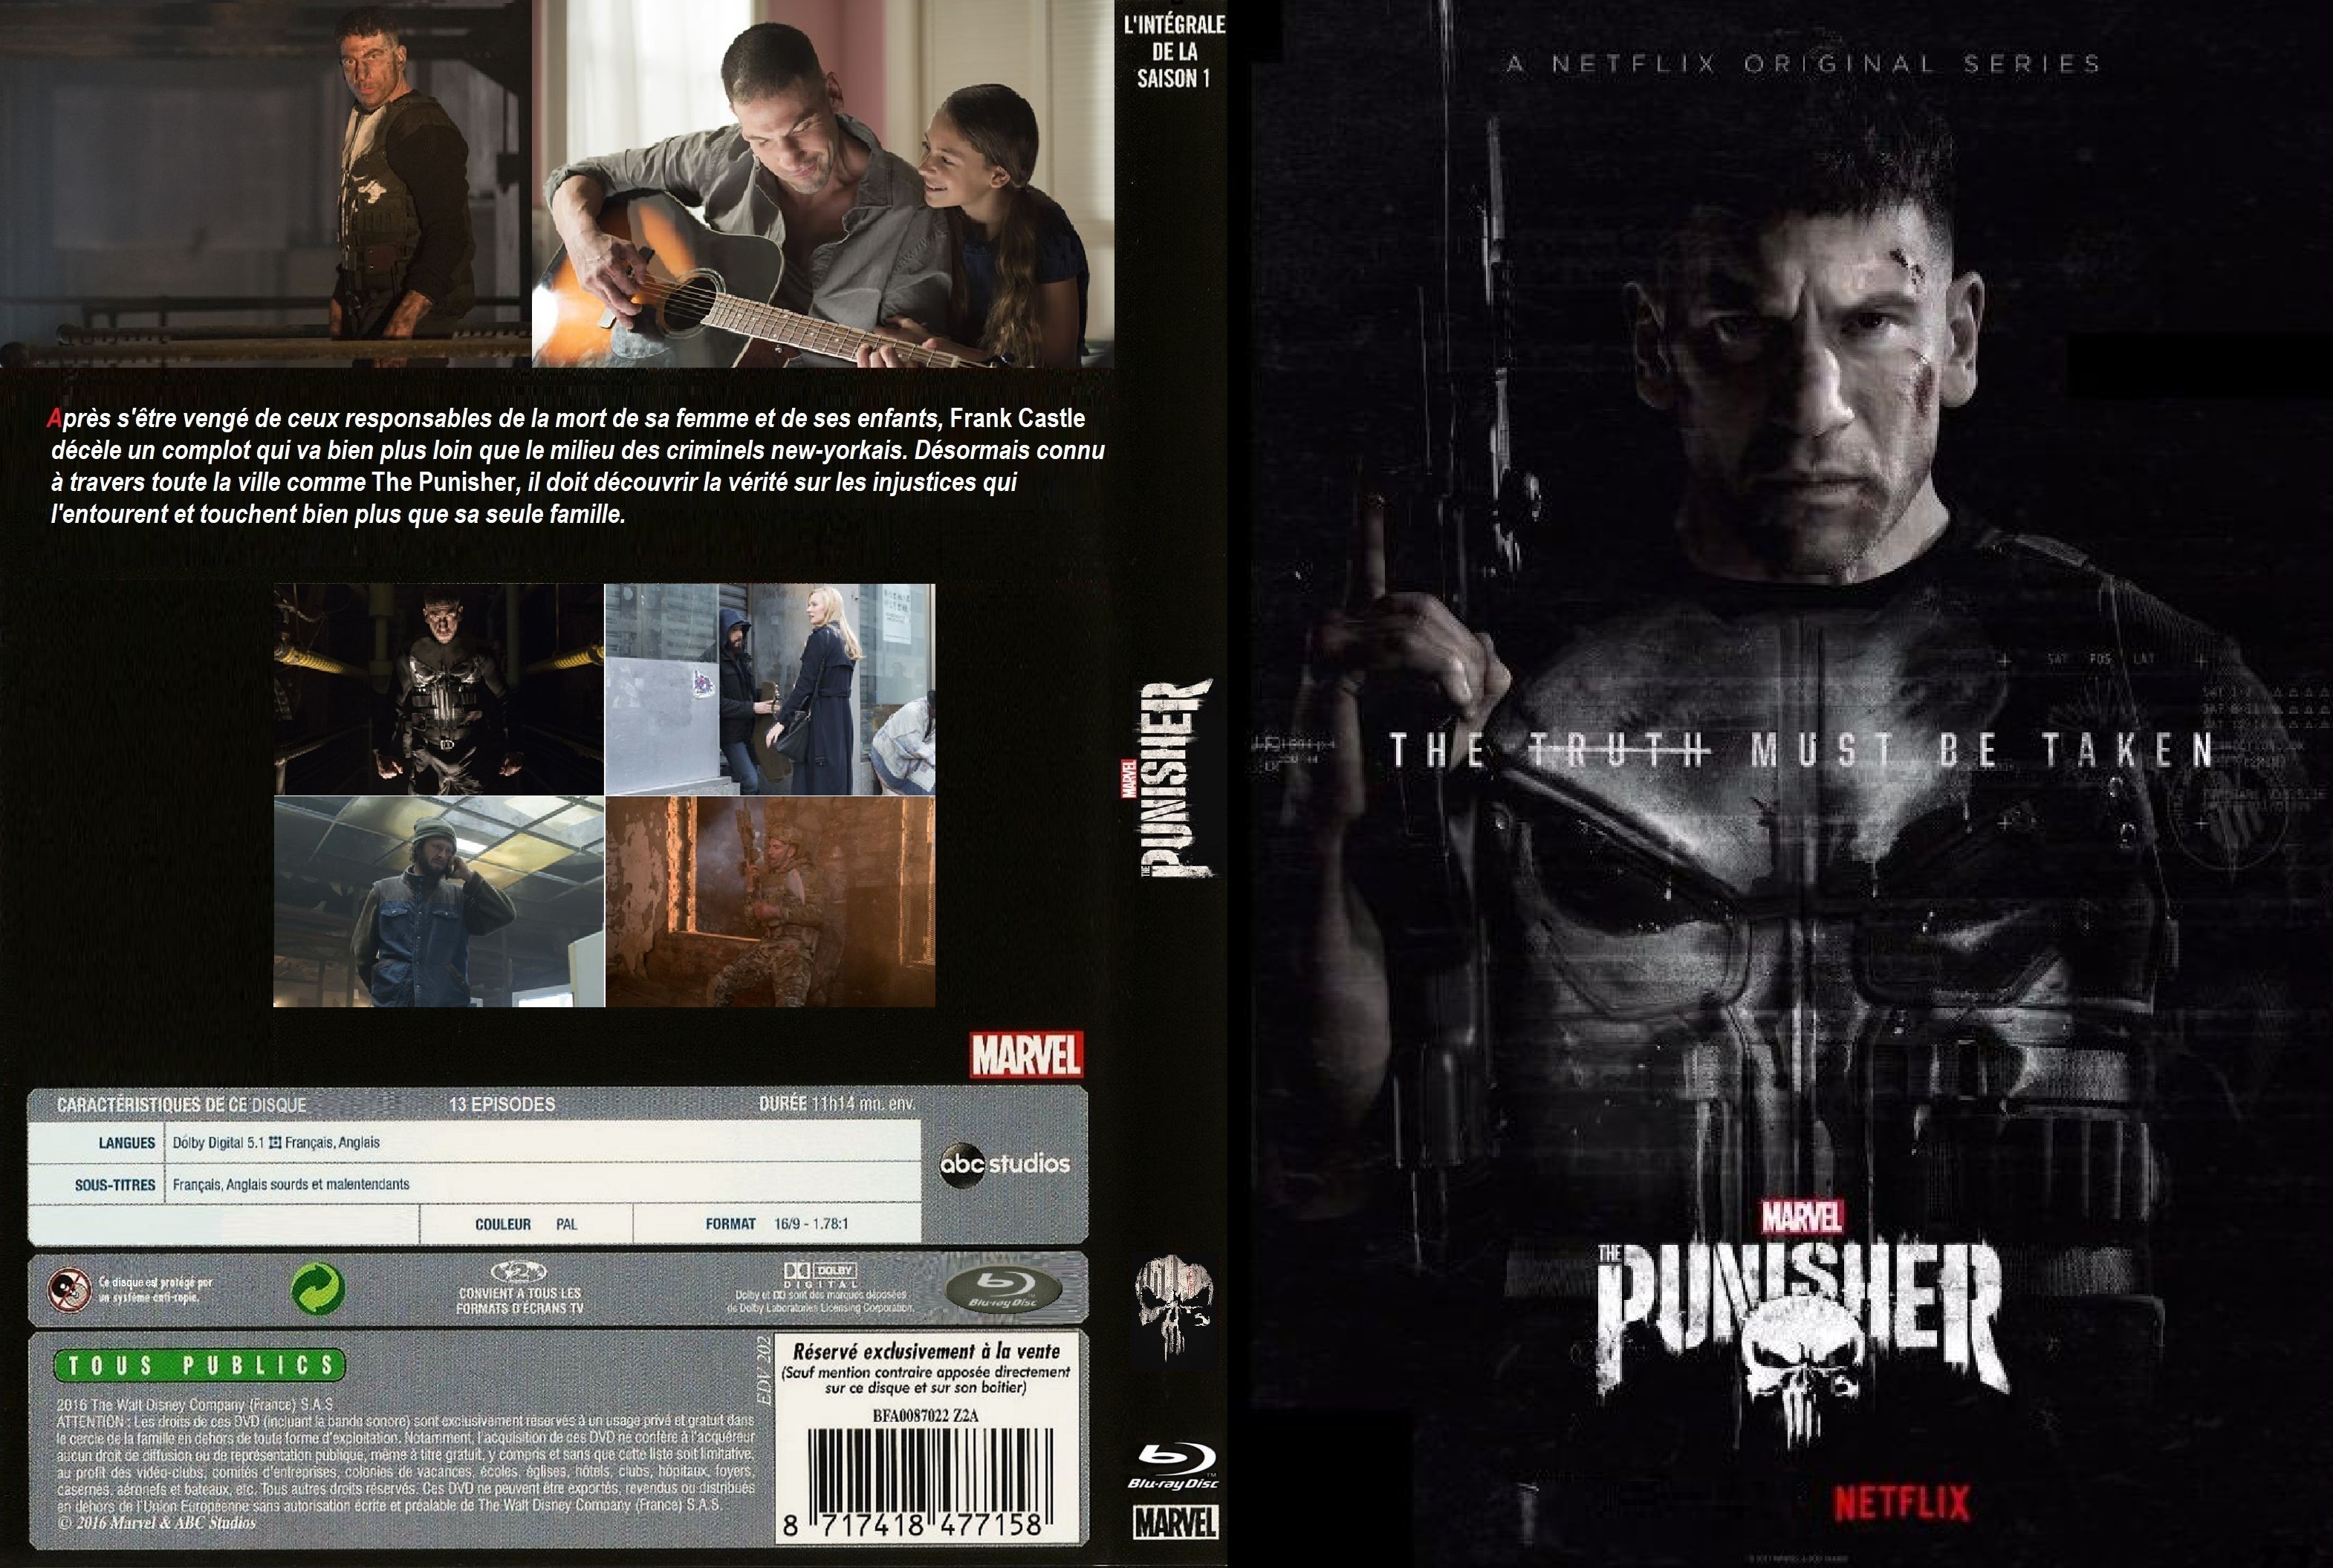 Jaquette DVD The Punisher saison 1 custom v3